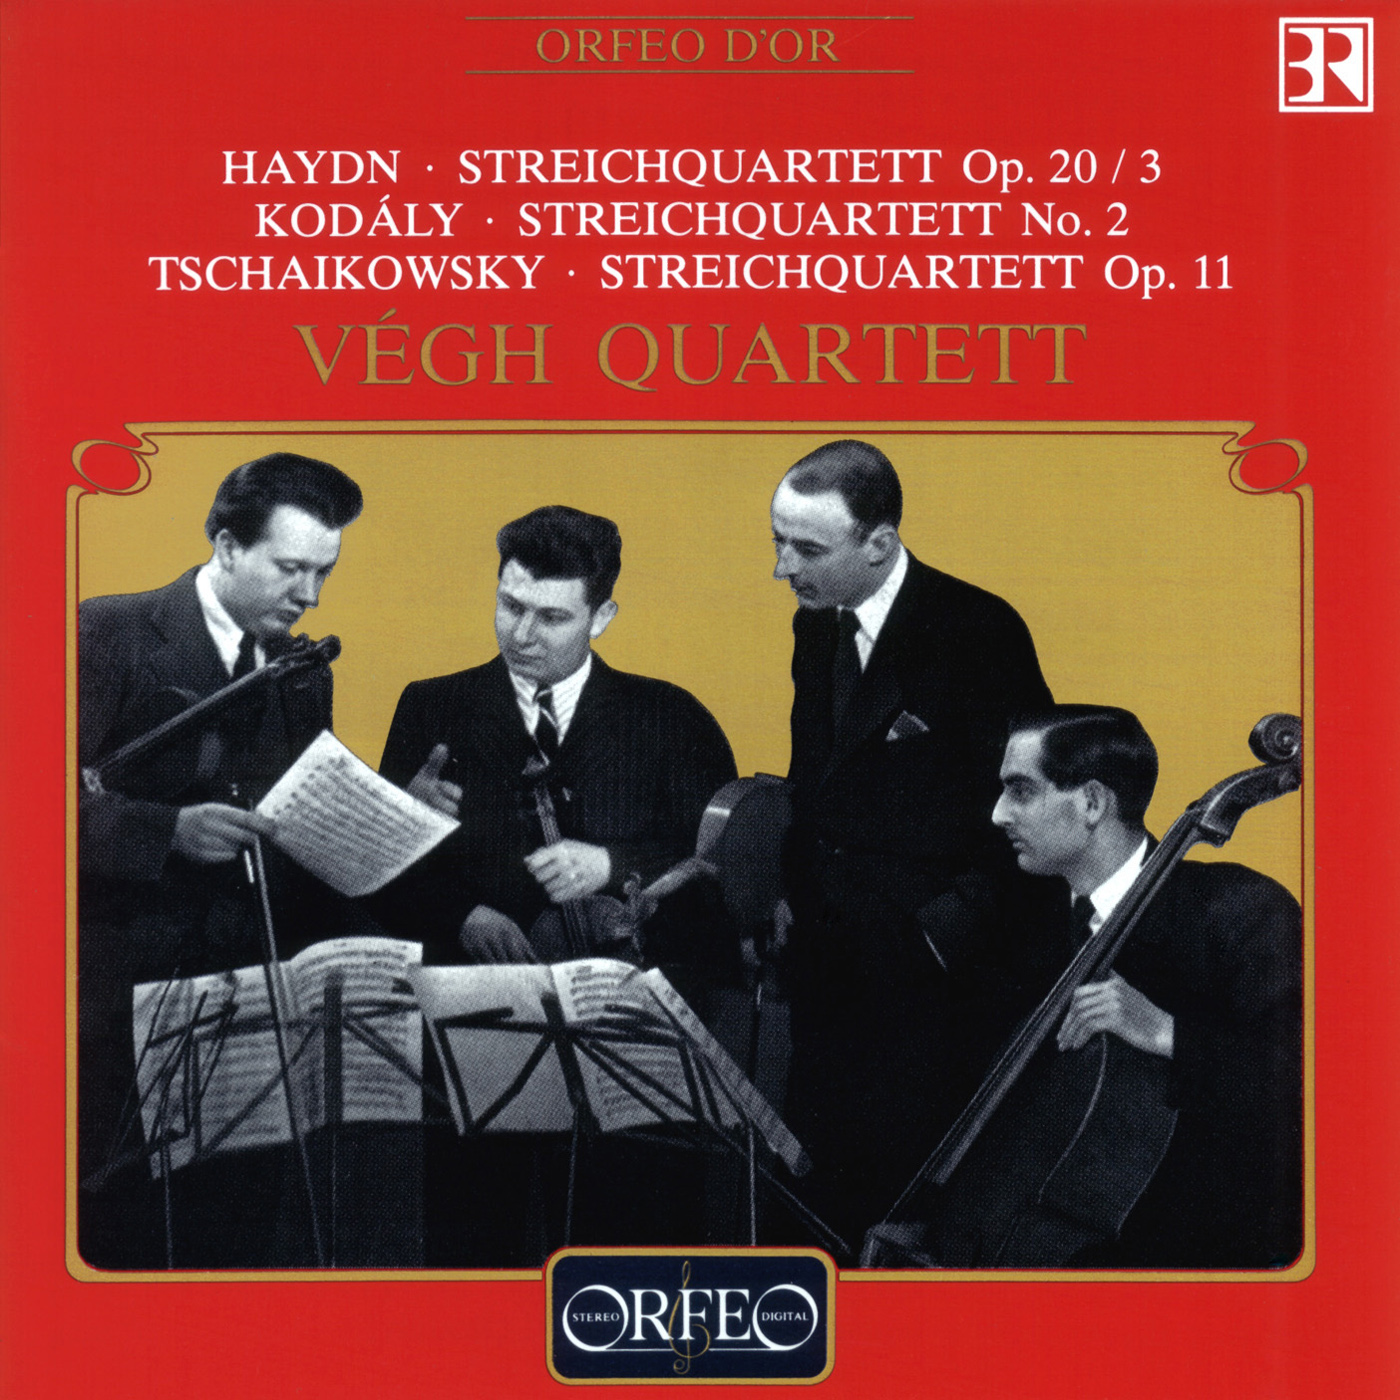 HAYDN, J.: String Quartet No. 26  KODÁ LY, Z.: String Quartet No. 2  TCHAIKOVSKY, P. I.: String Quartet No. 1 Ve gh Quartet